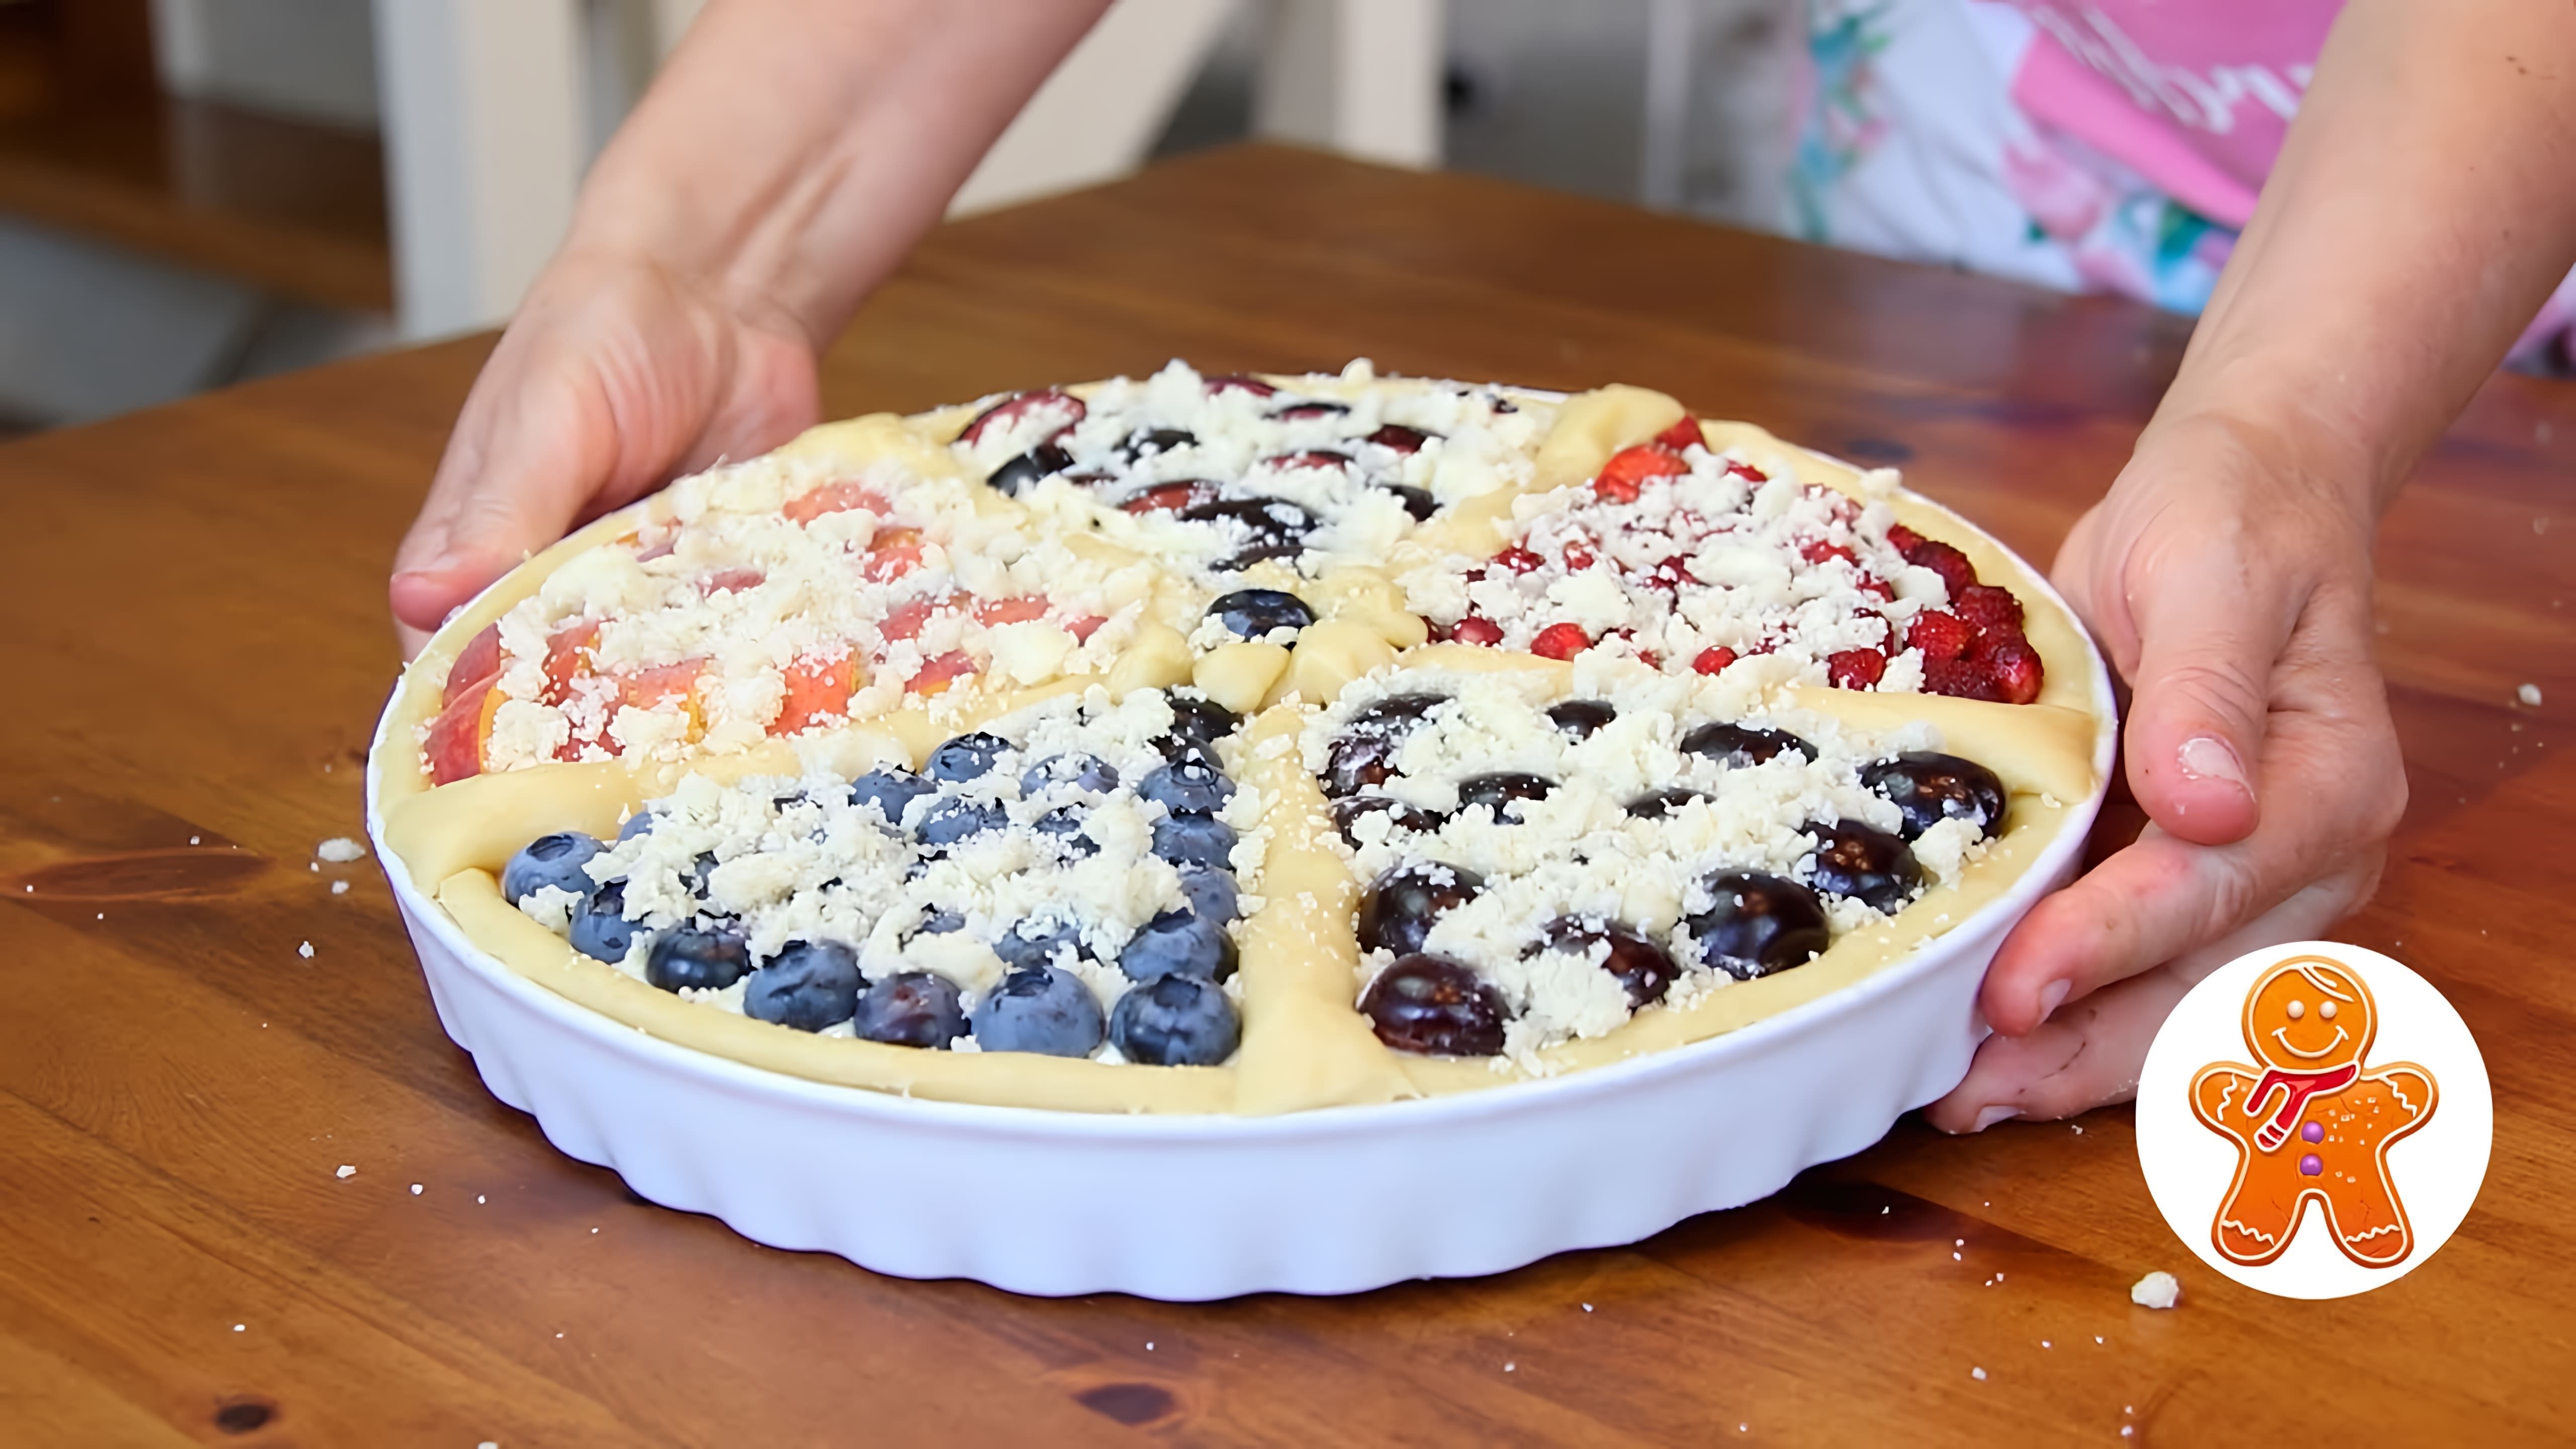 В этом видео демонстрируется процесс приготовления творожного пирога "Ассорти" с ягодами и фруктами